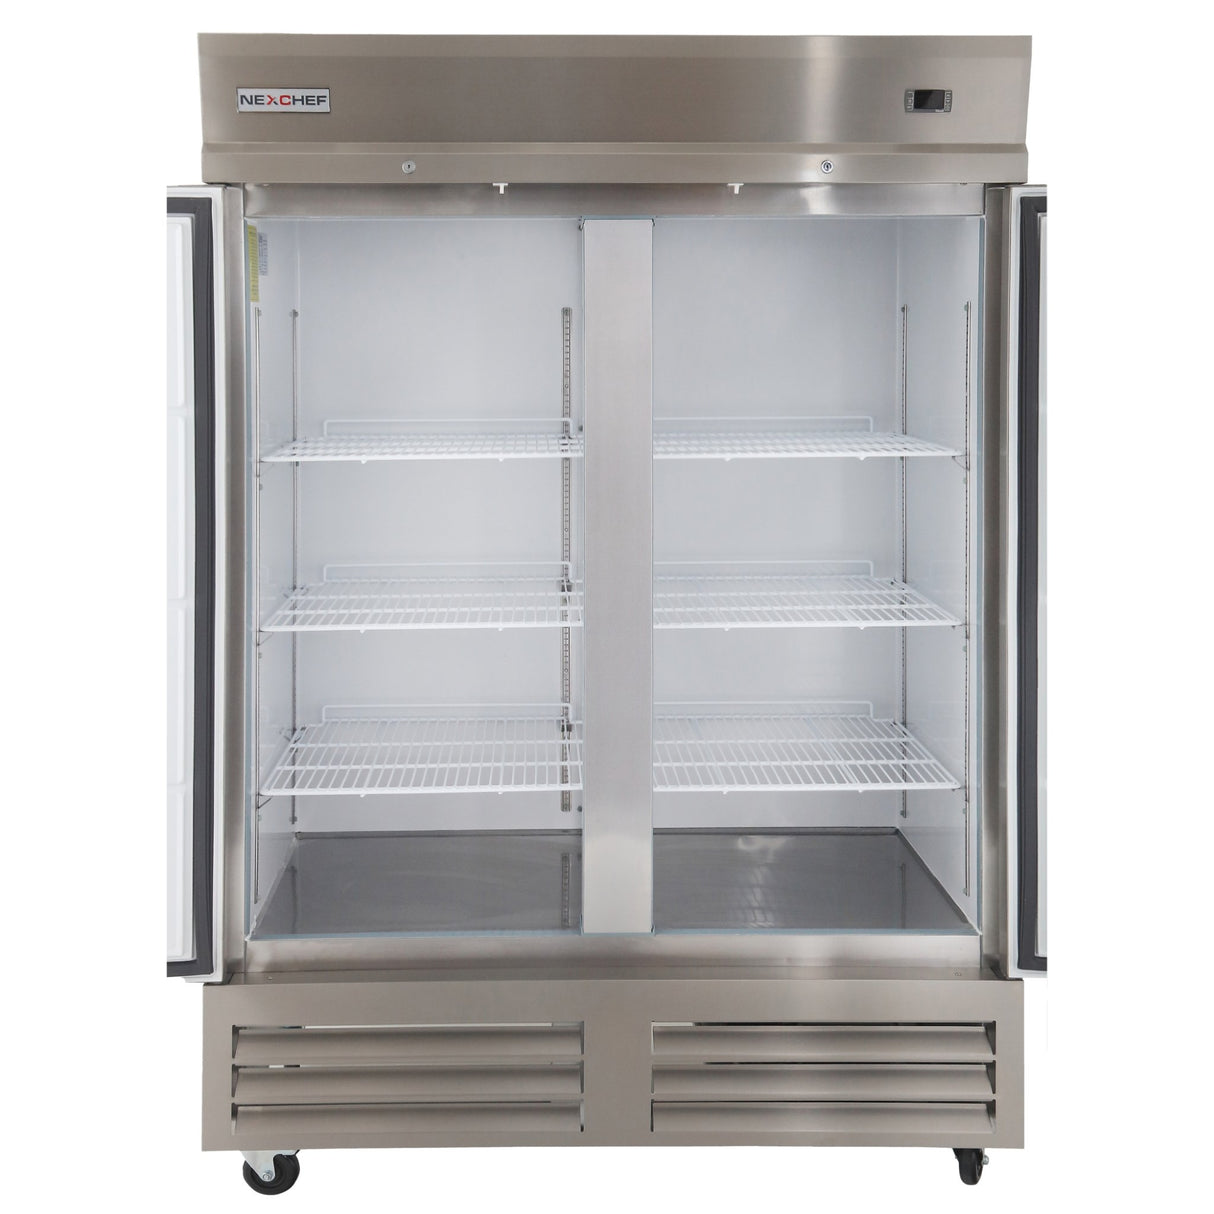 Congelador industrial vertical con puerta de vidrio 27 pulgadas